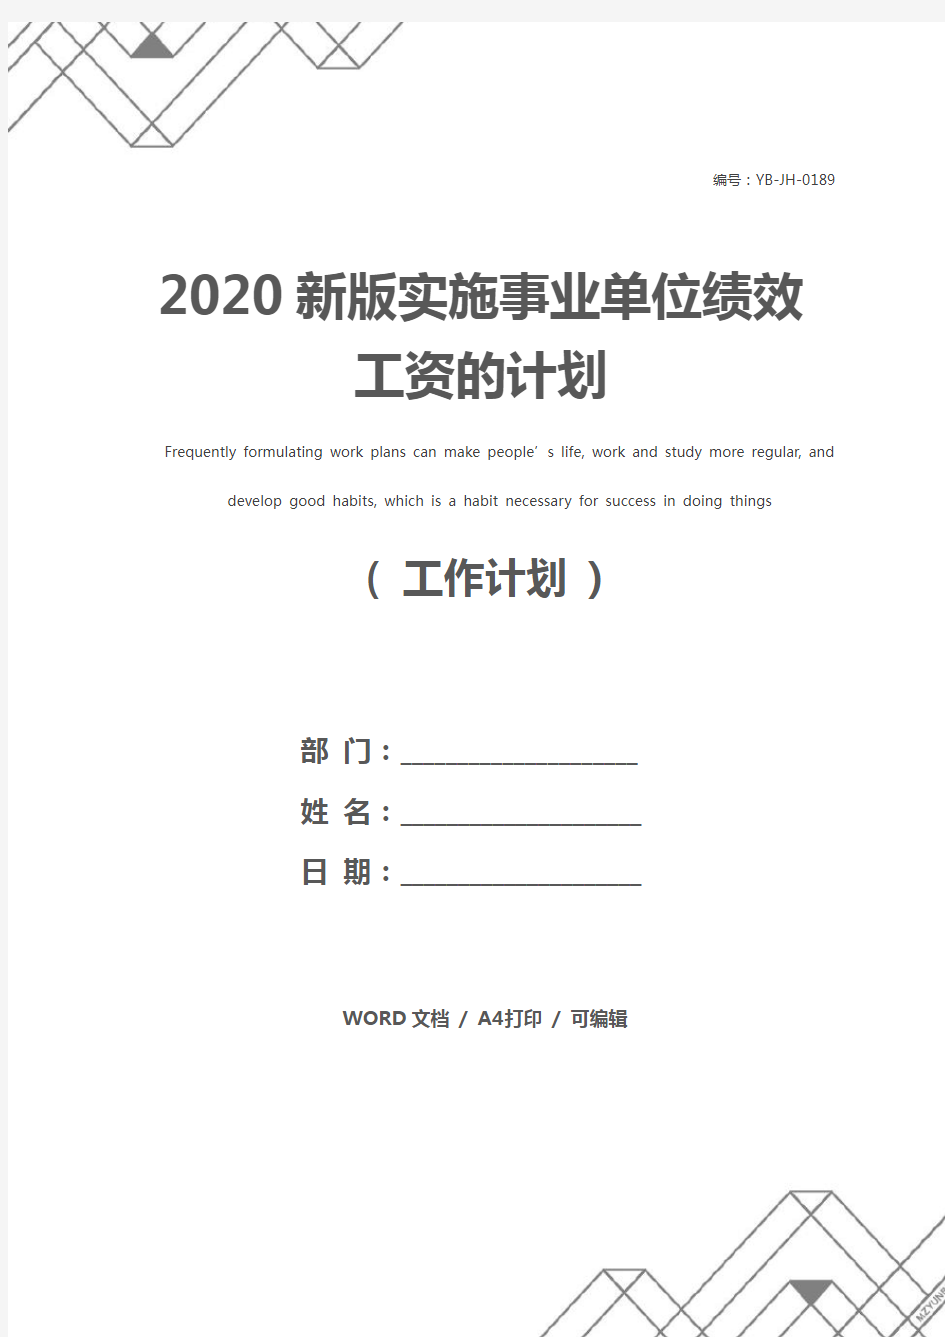 2020新版实施事业单位绩效工资的计划